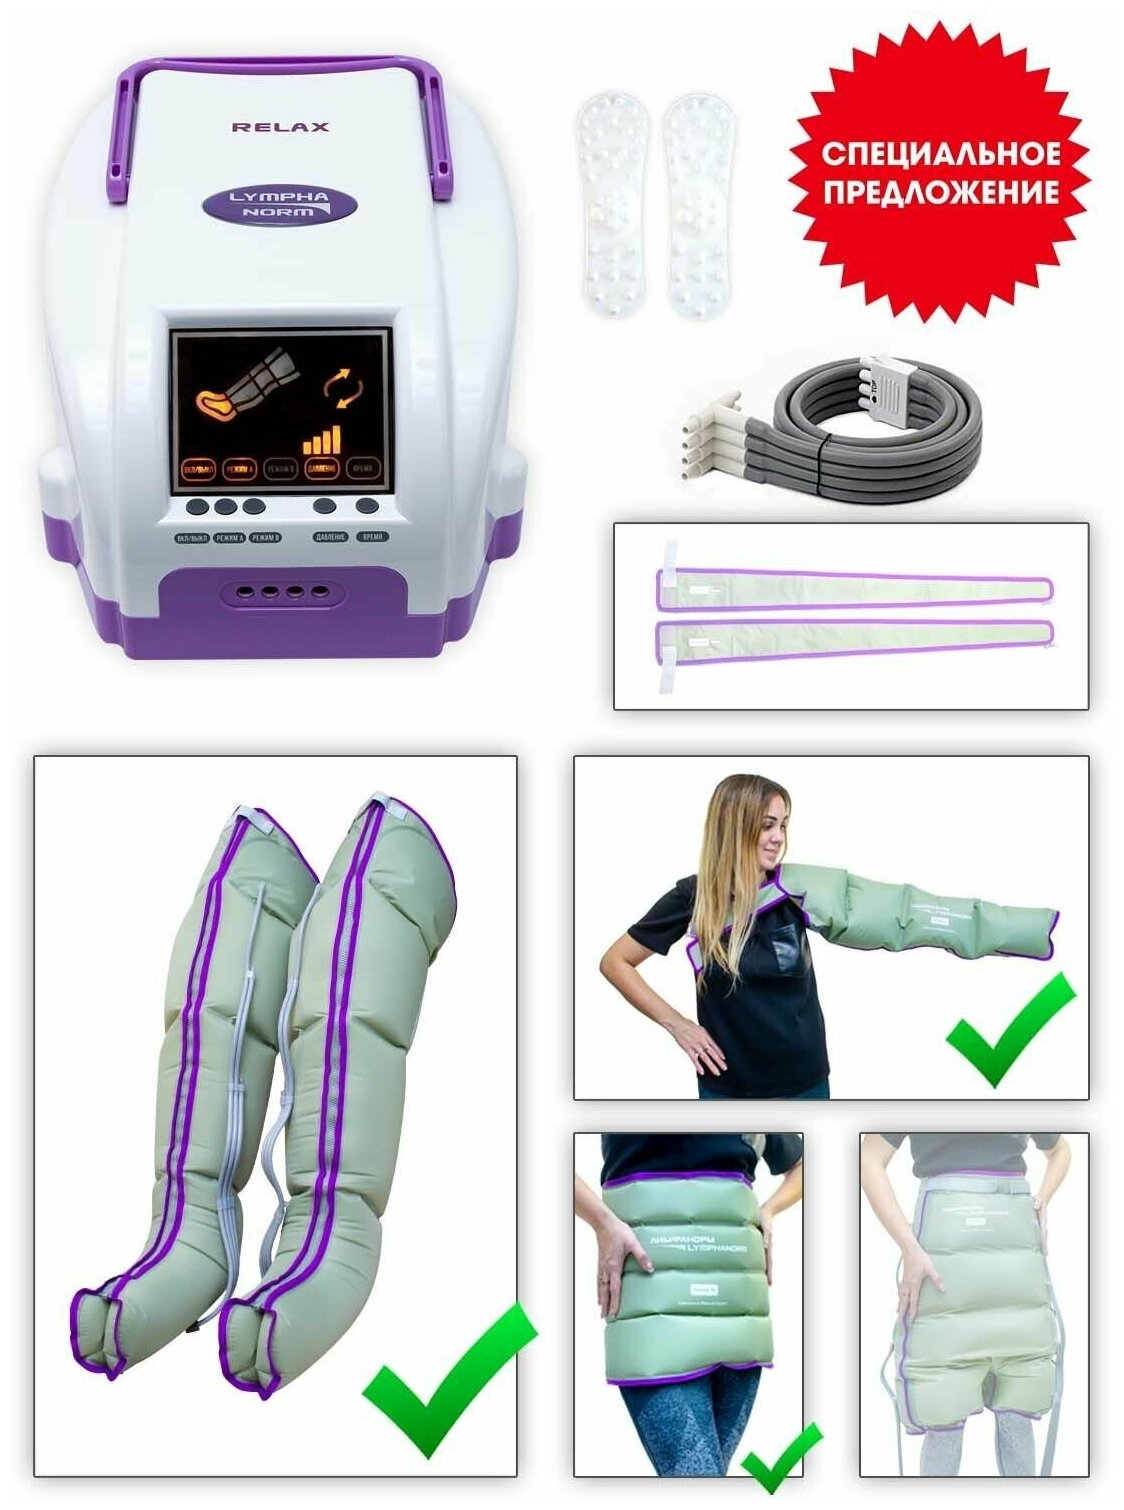 Аппарат для лимфодренажа и прессотерапии LymphaNorm RELAX. Комплект: манжеты на ногу (размер XL) пояс (размер XXL) манжета для руки (82 см)